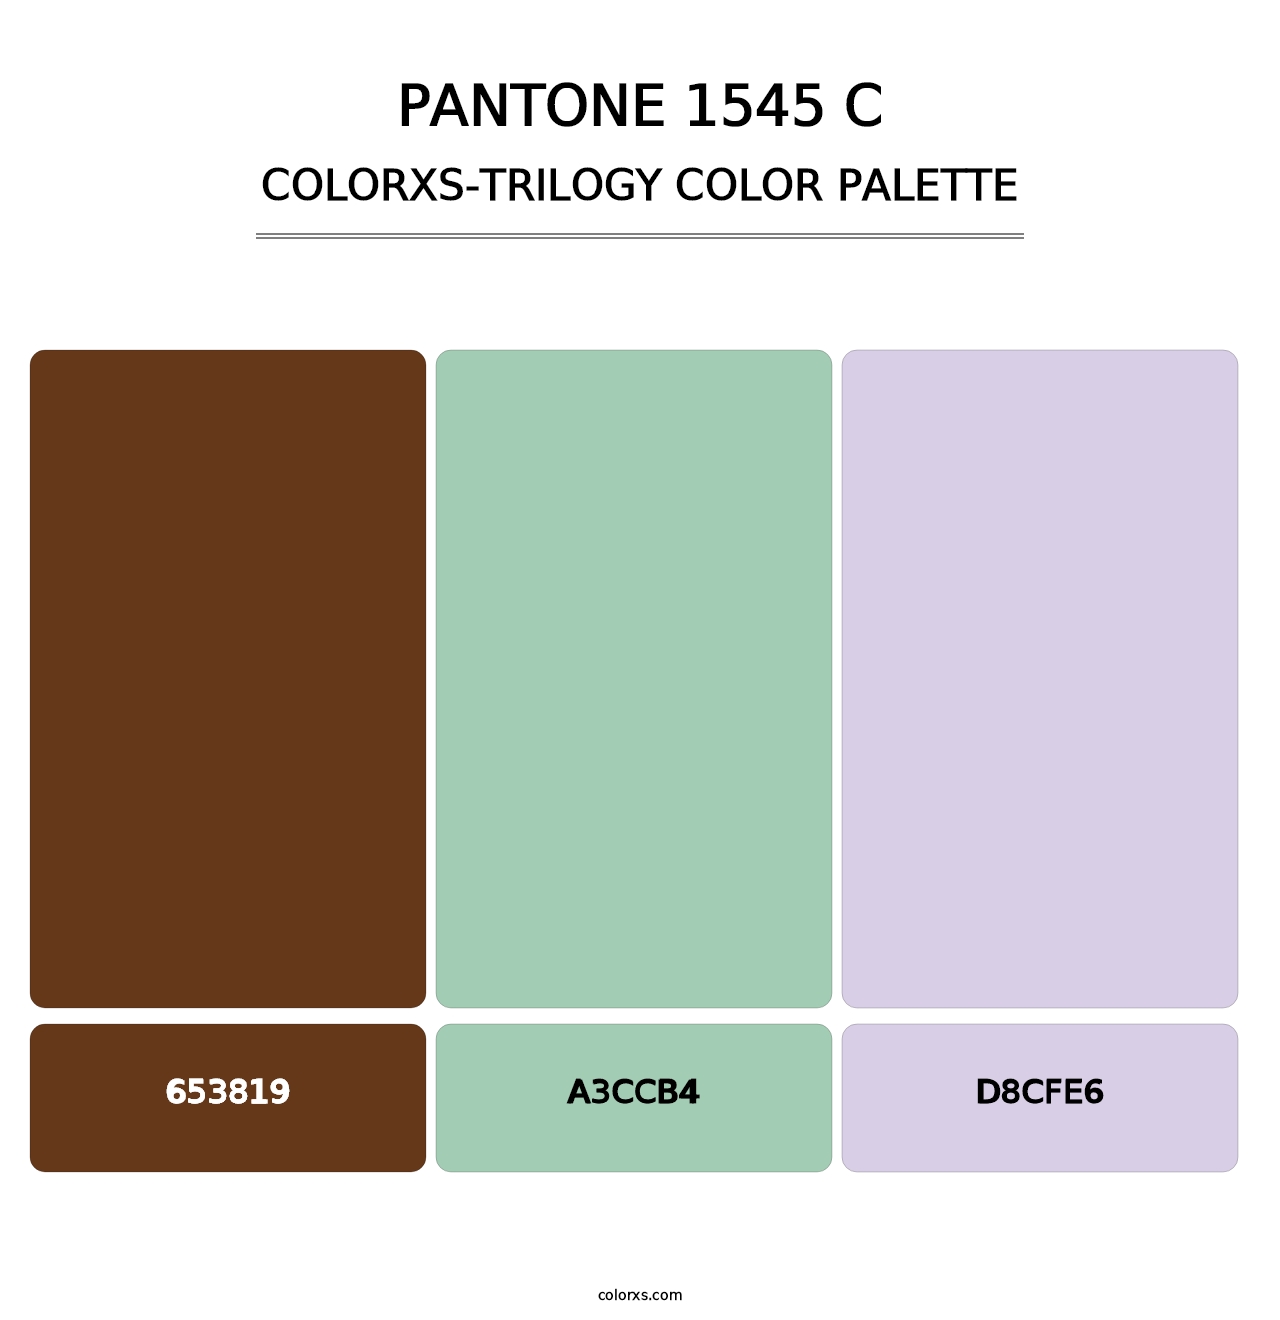 PANTONE 1545 C - Colorxs Trilogy Palette